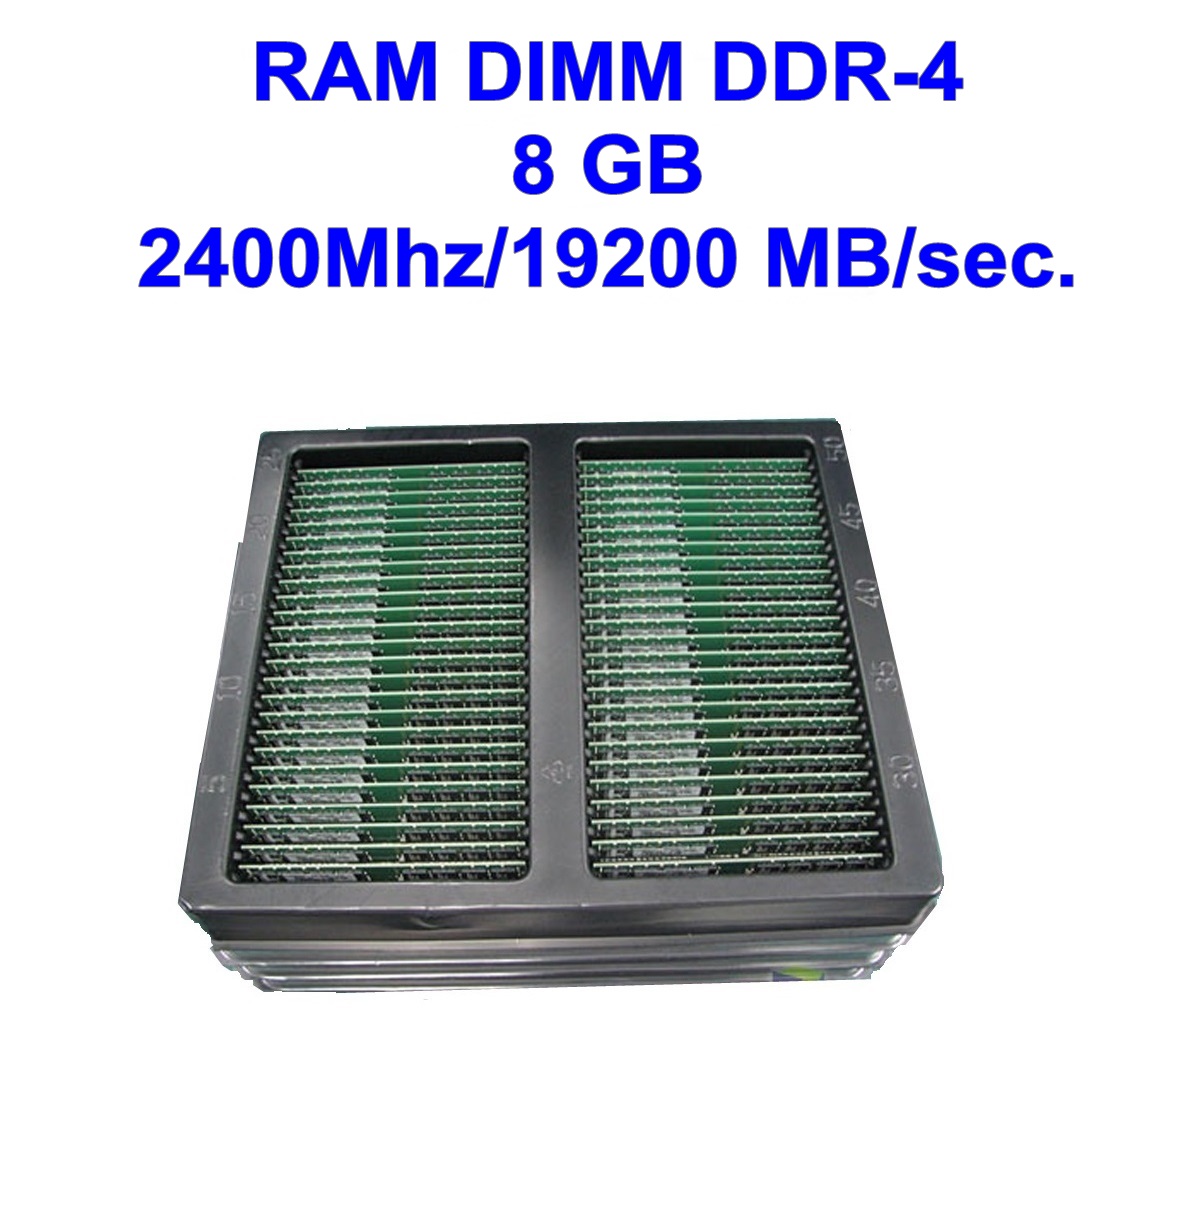 DIMM DDR-4 8 GB 2400Mhz/19200 MB/sec.